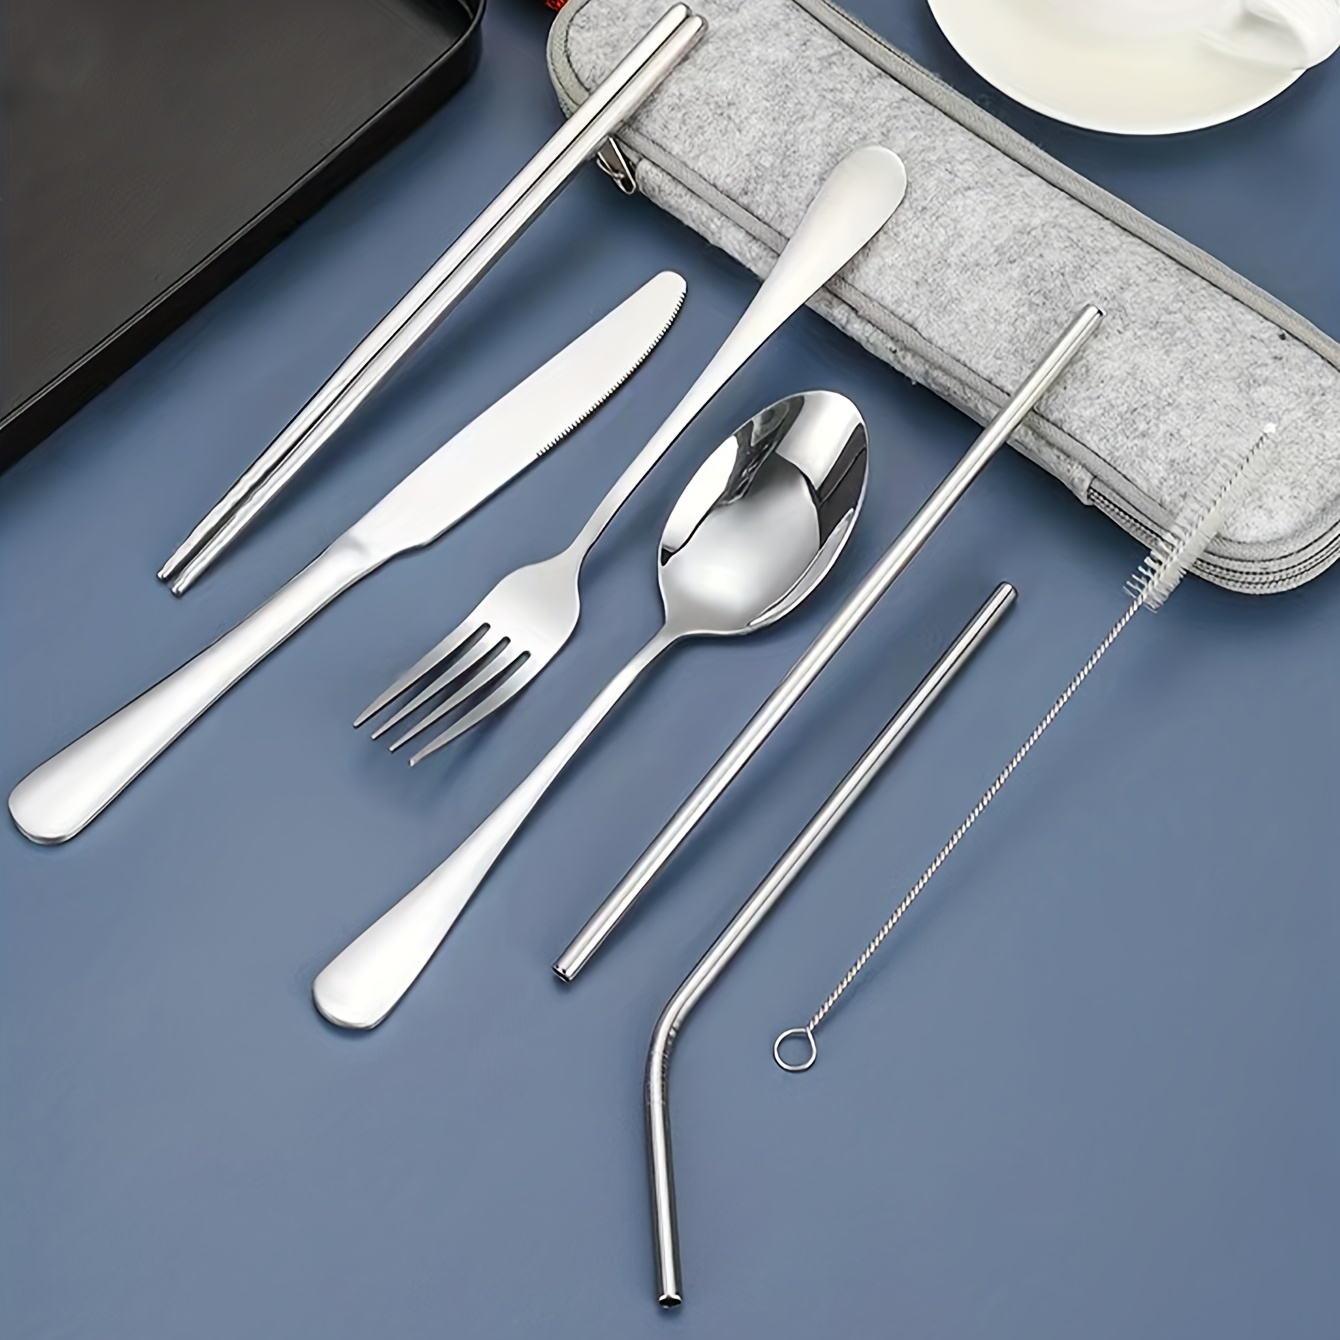 Stainless Steel Tableware Set Tableware Kitchen Utensils - Temu